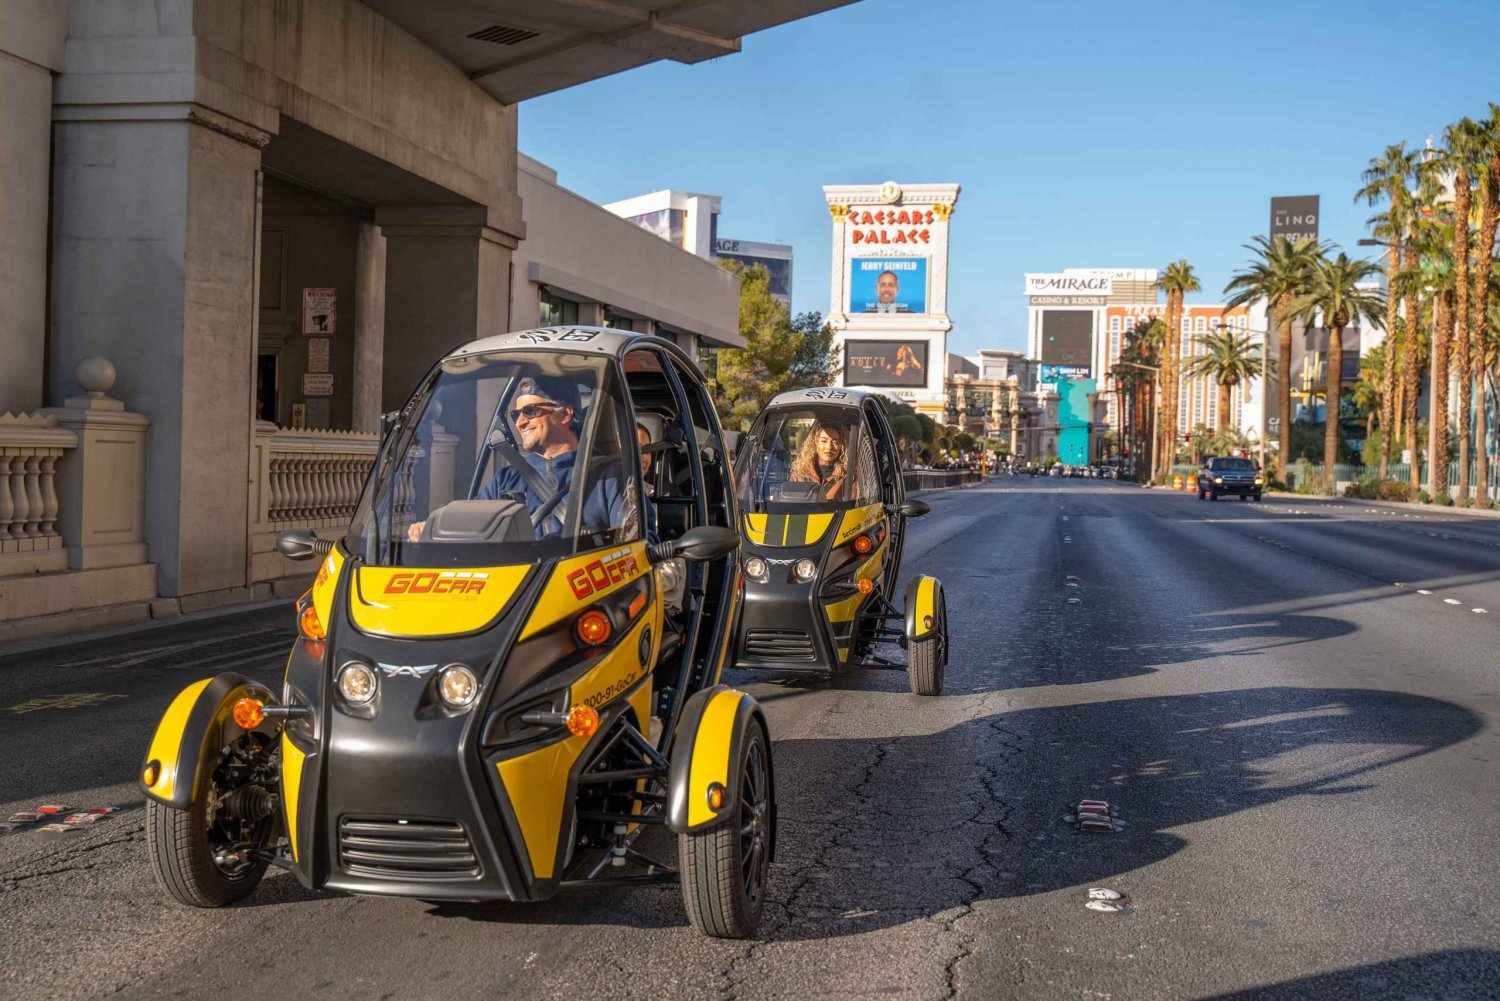 Las Vegas: Excursão de 1 dia com o Talking GoCar Explore Las Vegas